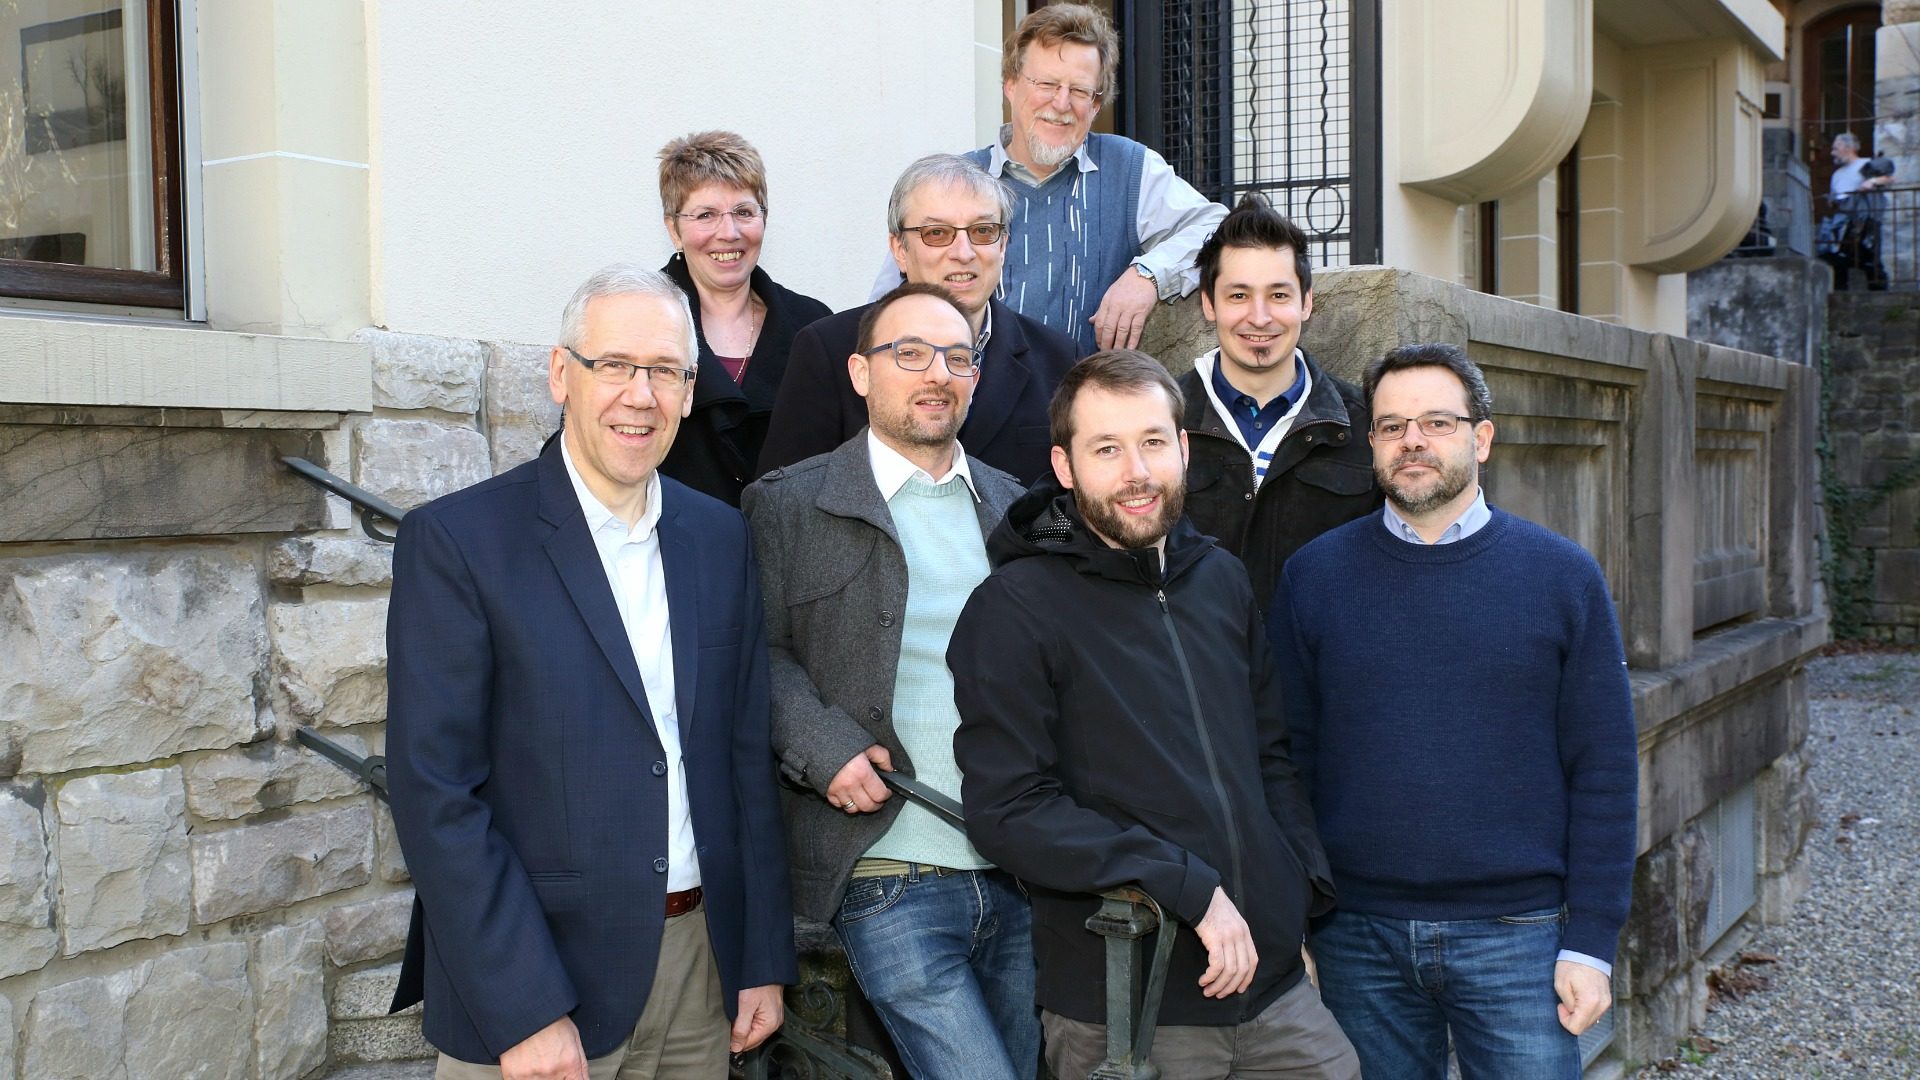 L'équipe de cath.ch. (de g. à dr. et de bas en haut): B. Litzler, R. Zbinden, P. Pistoletti, B. Hallet, C. Métrailler, M. Page, G. Roth et J. Berset. (Photo: B. Hallet)  